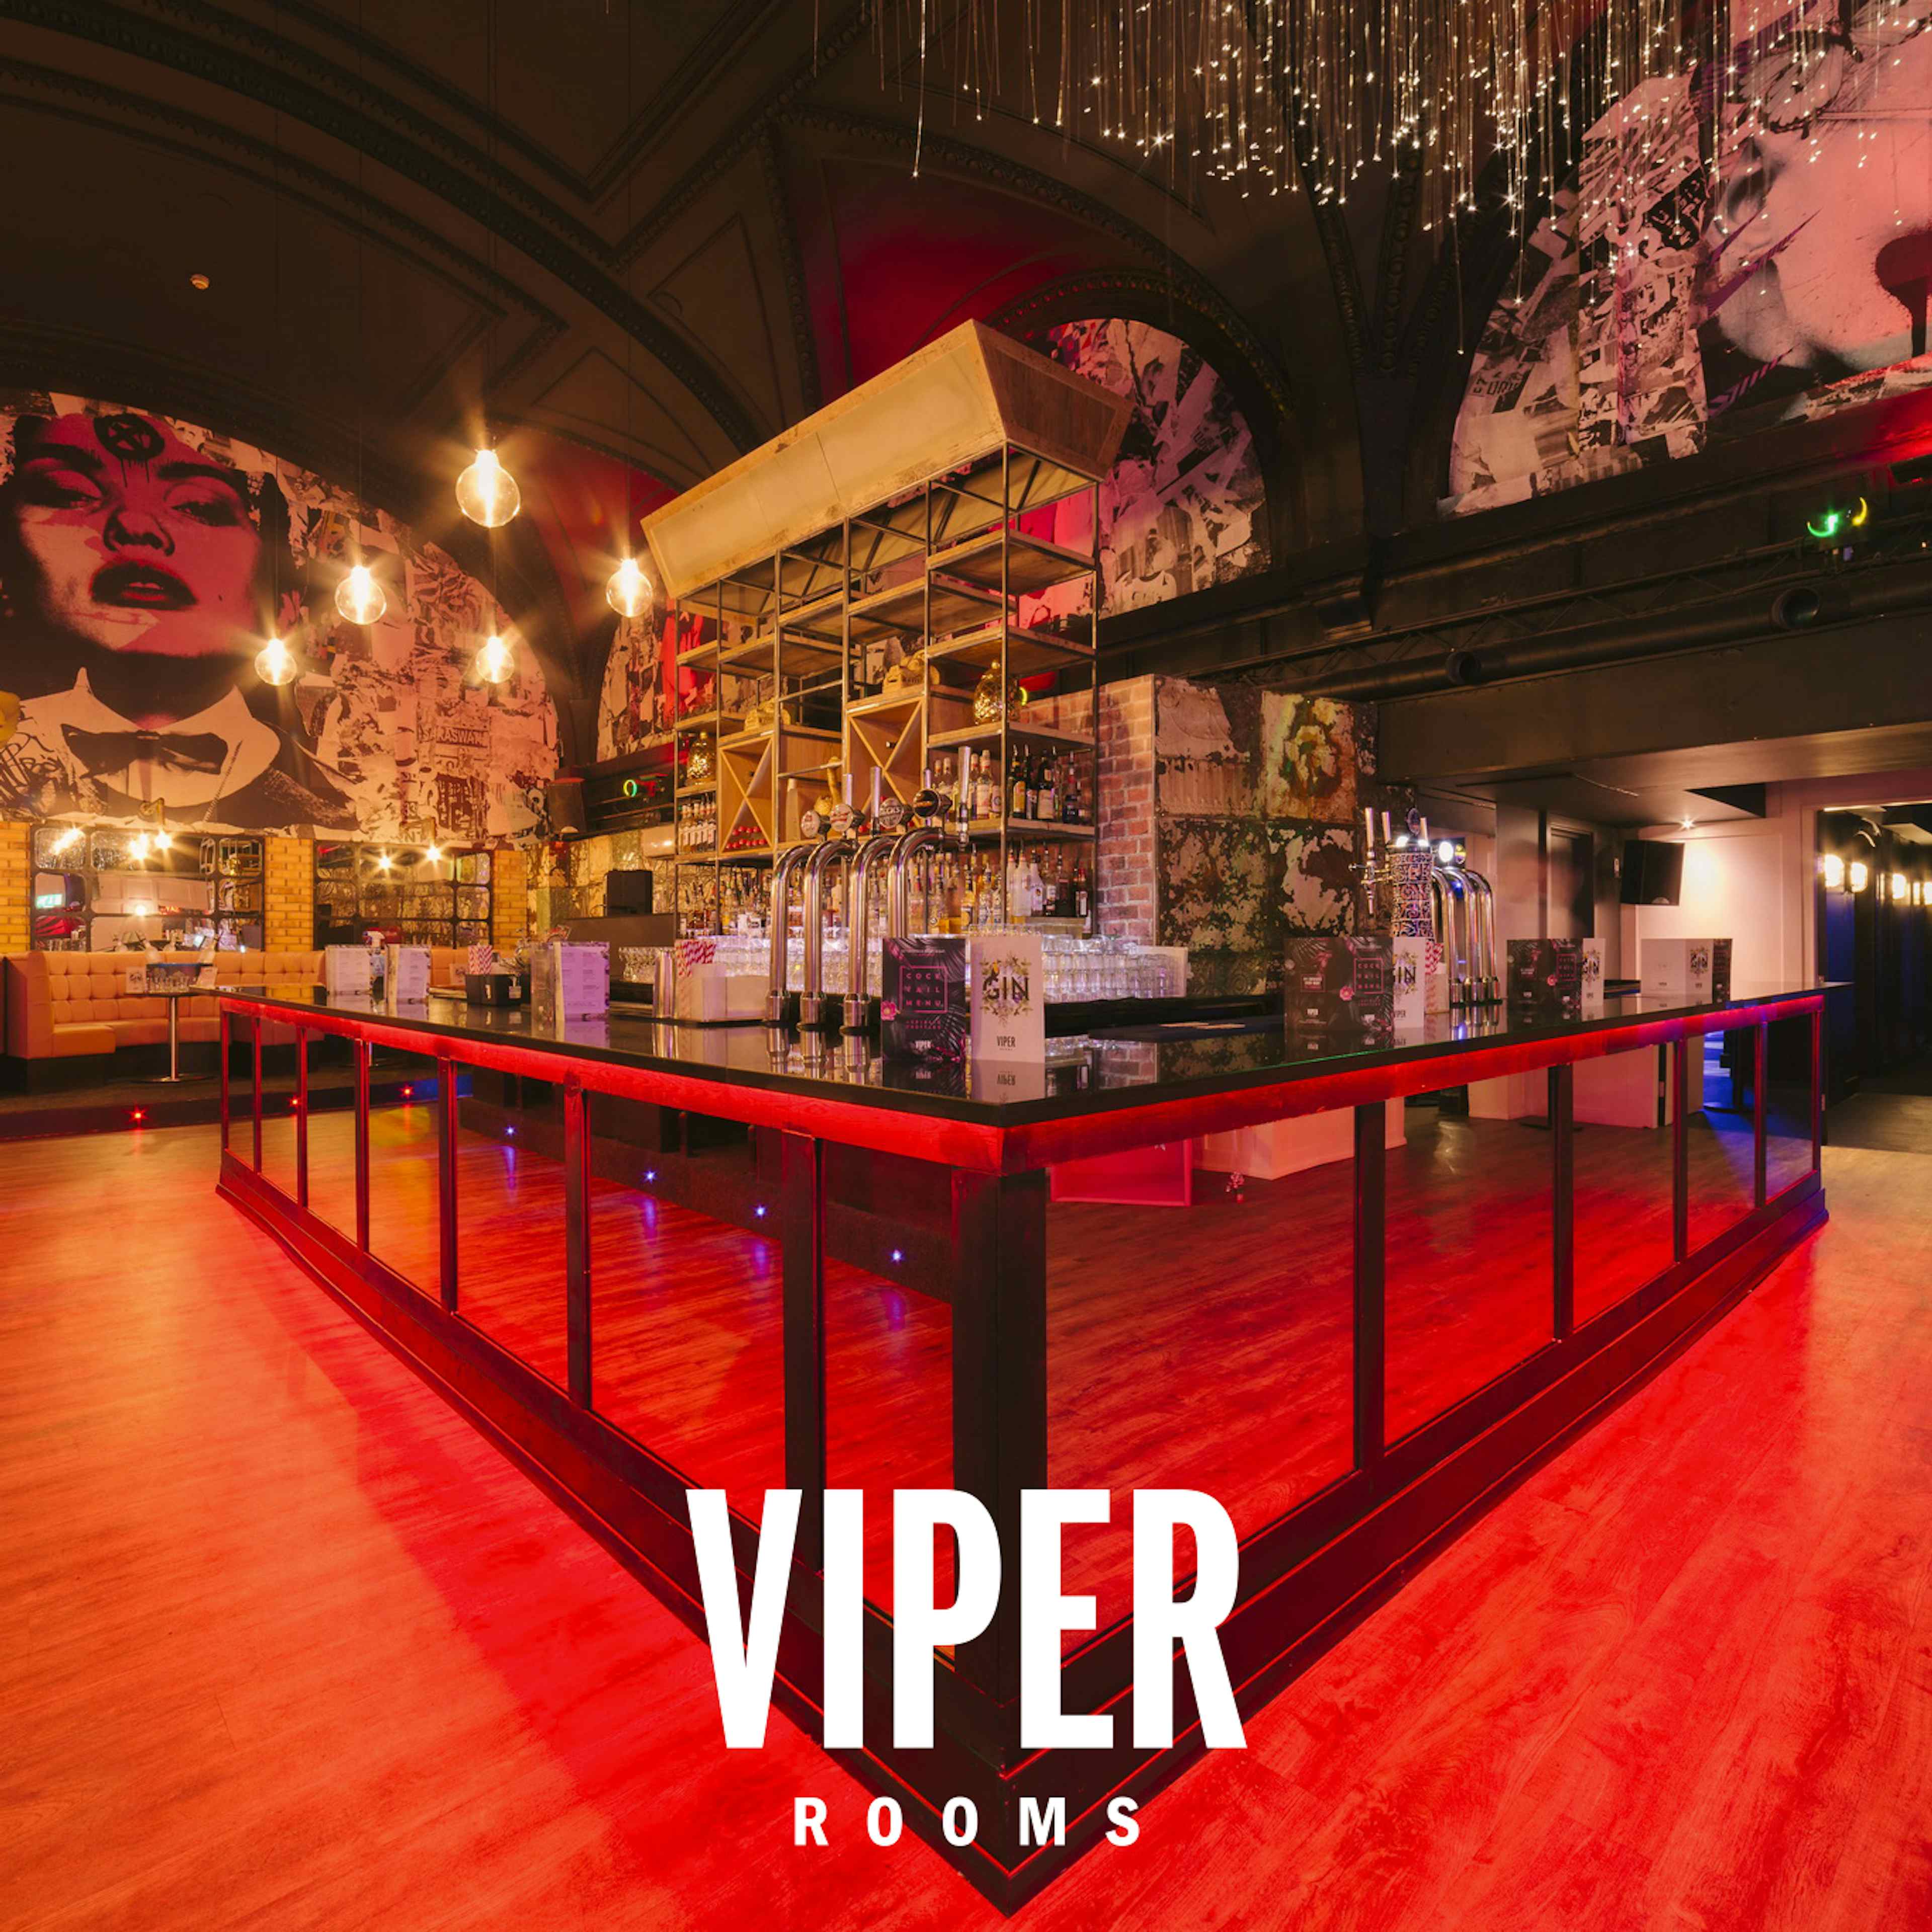 Viper Rooms Harrogate - Viper Rooms image 2